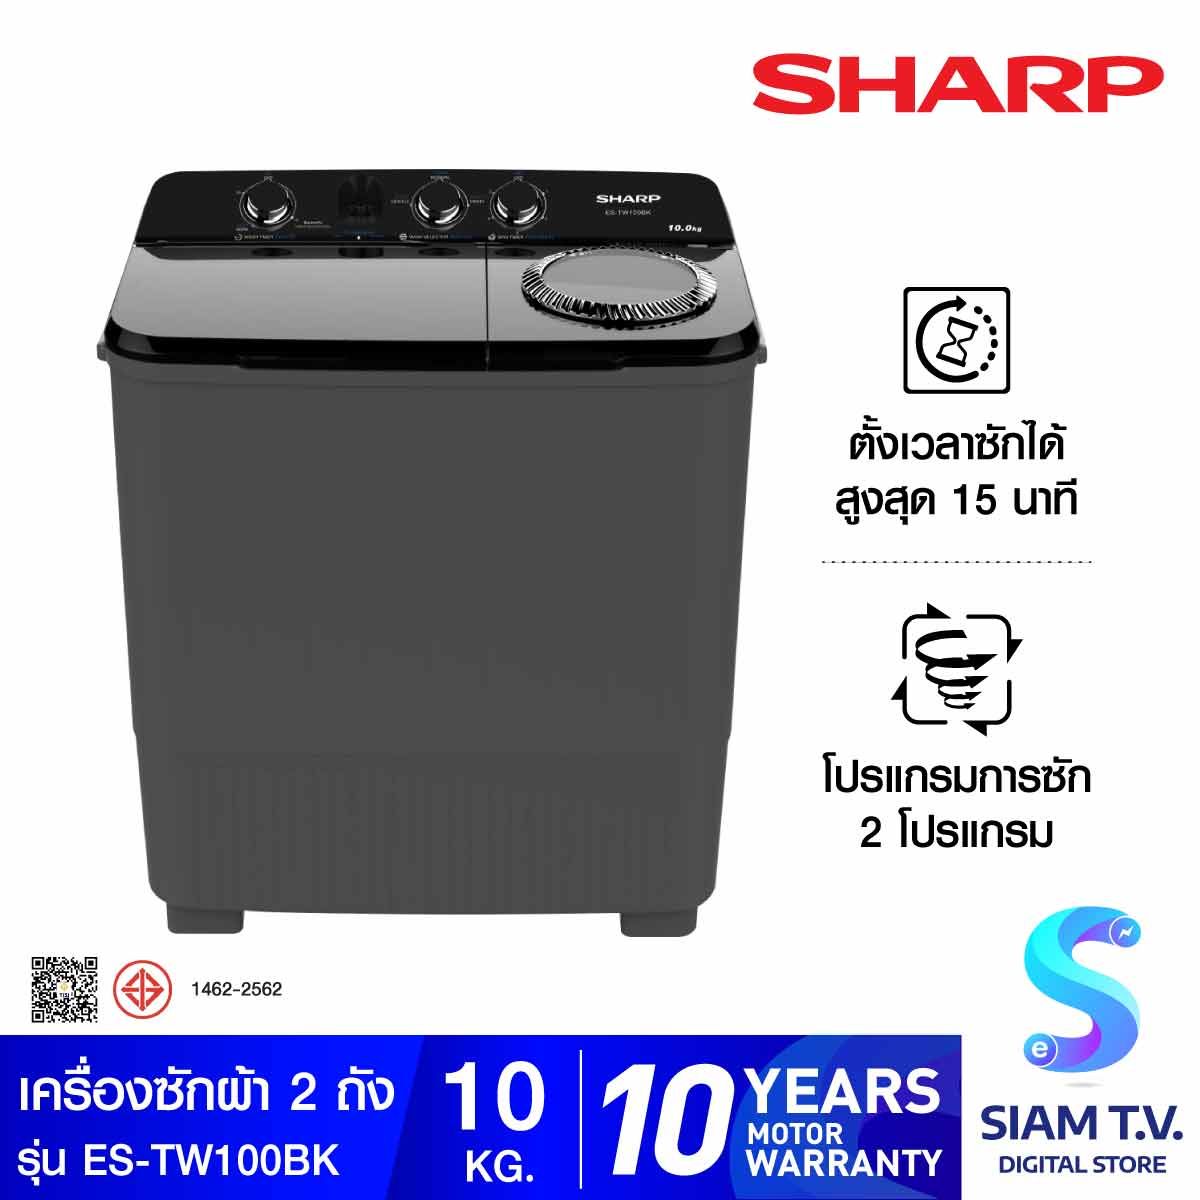 SHARP เครื่องซักผ้า 2ถัง 10Kg. สีดำ รุ่น ES-TW100BK